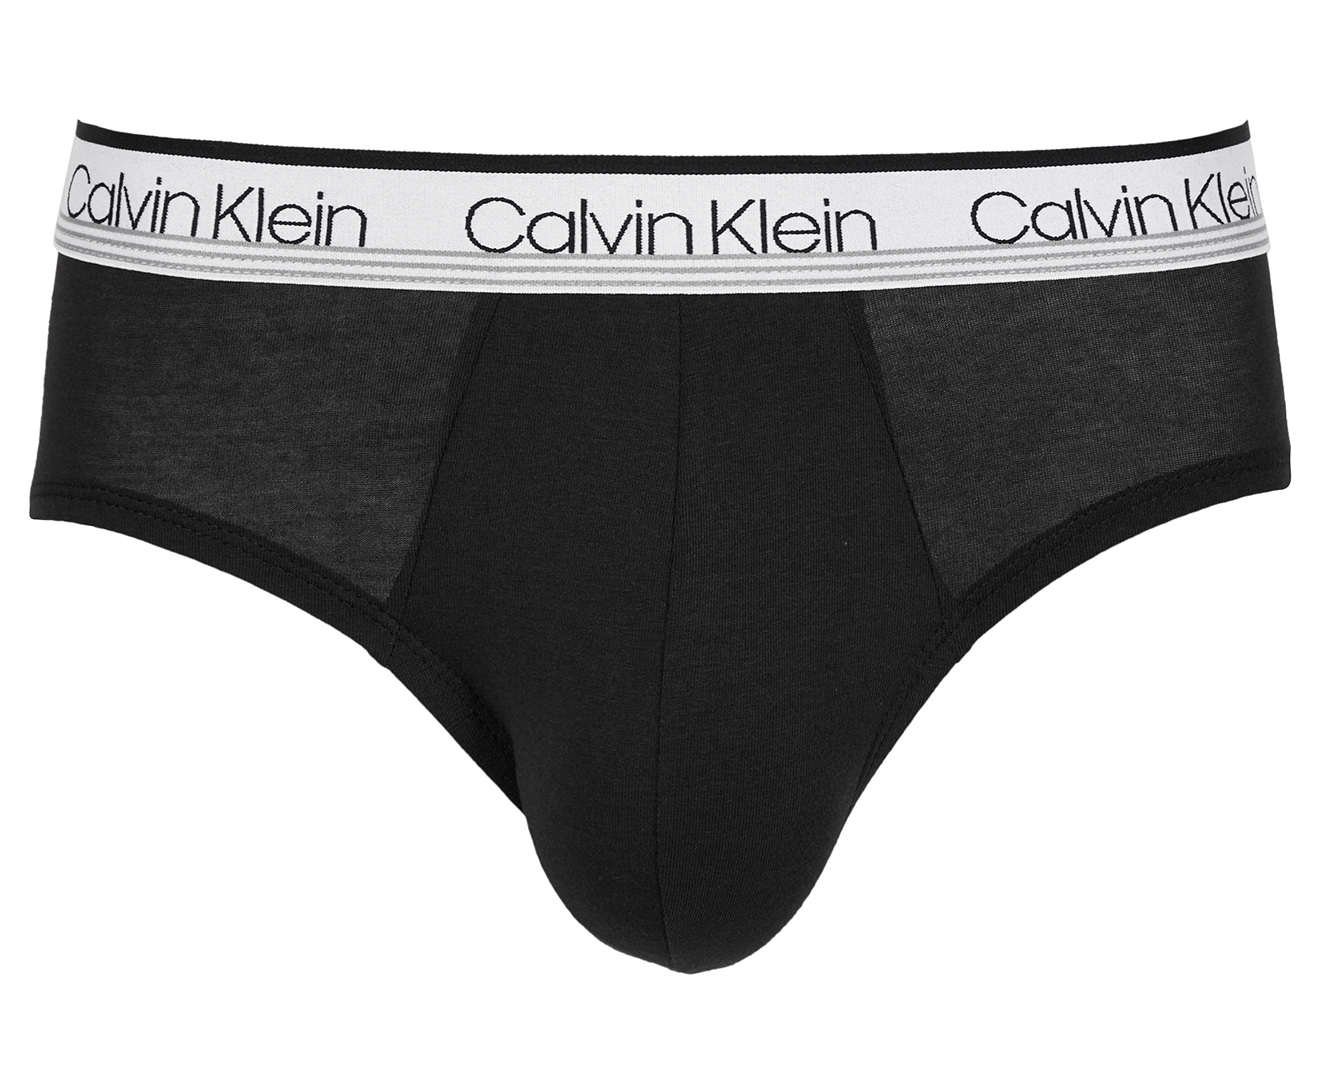 Calvin Klein Men's Variety Waistband Cotton Stretch Hip Briefs 3-Pack ...